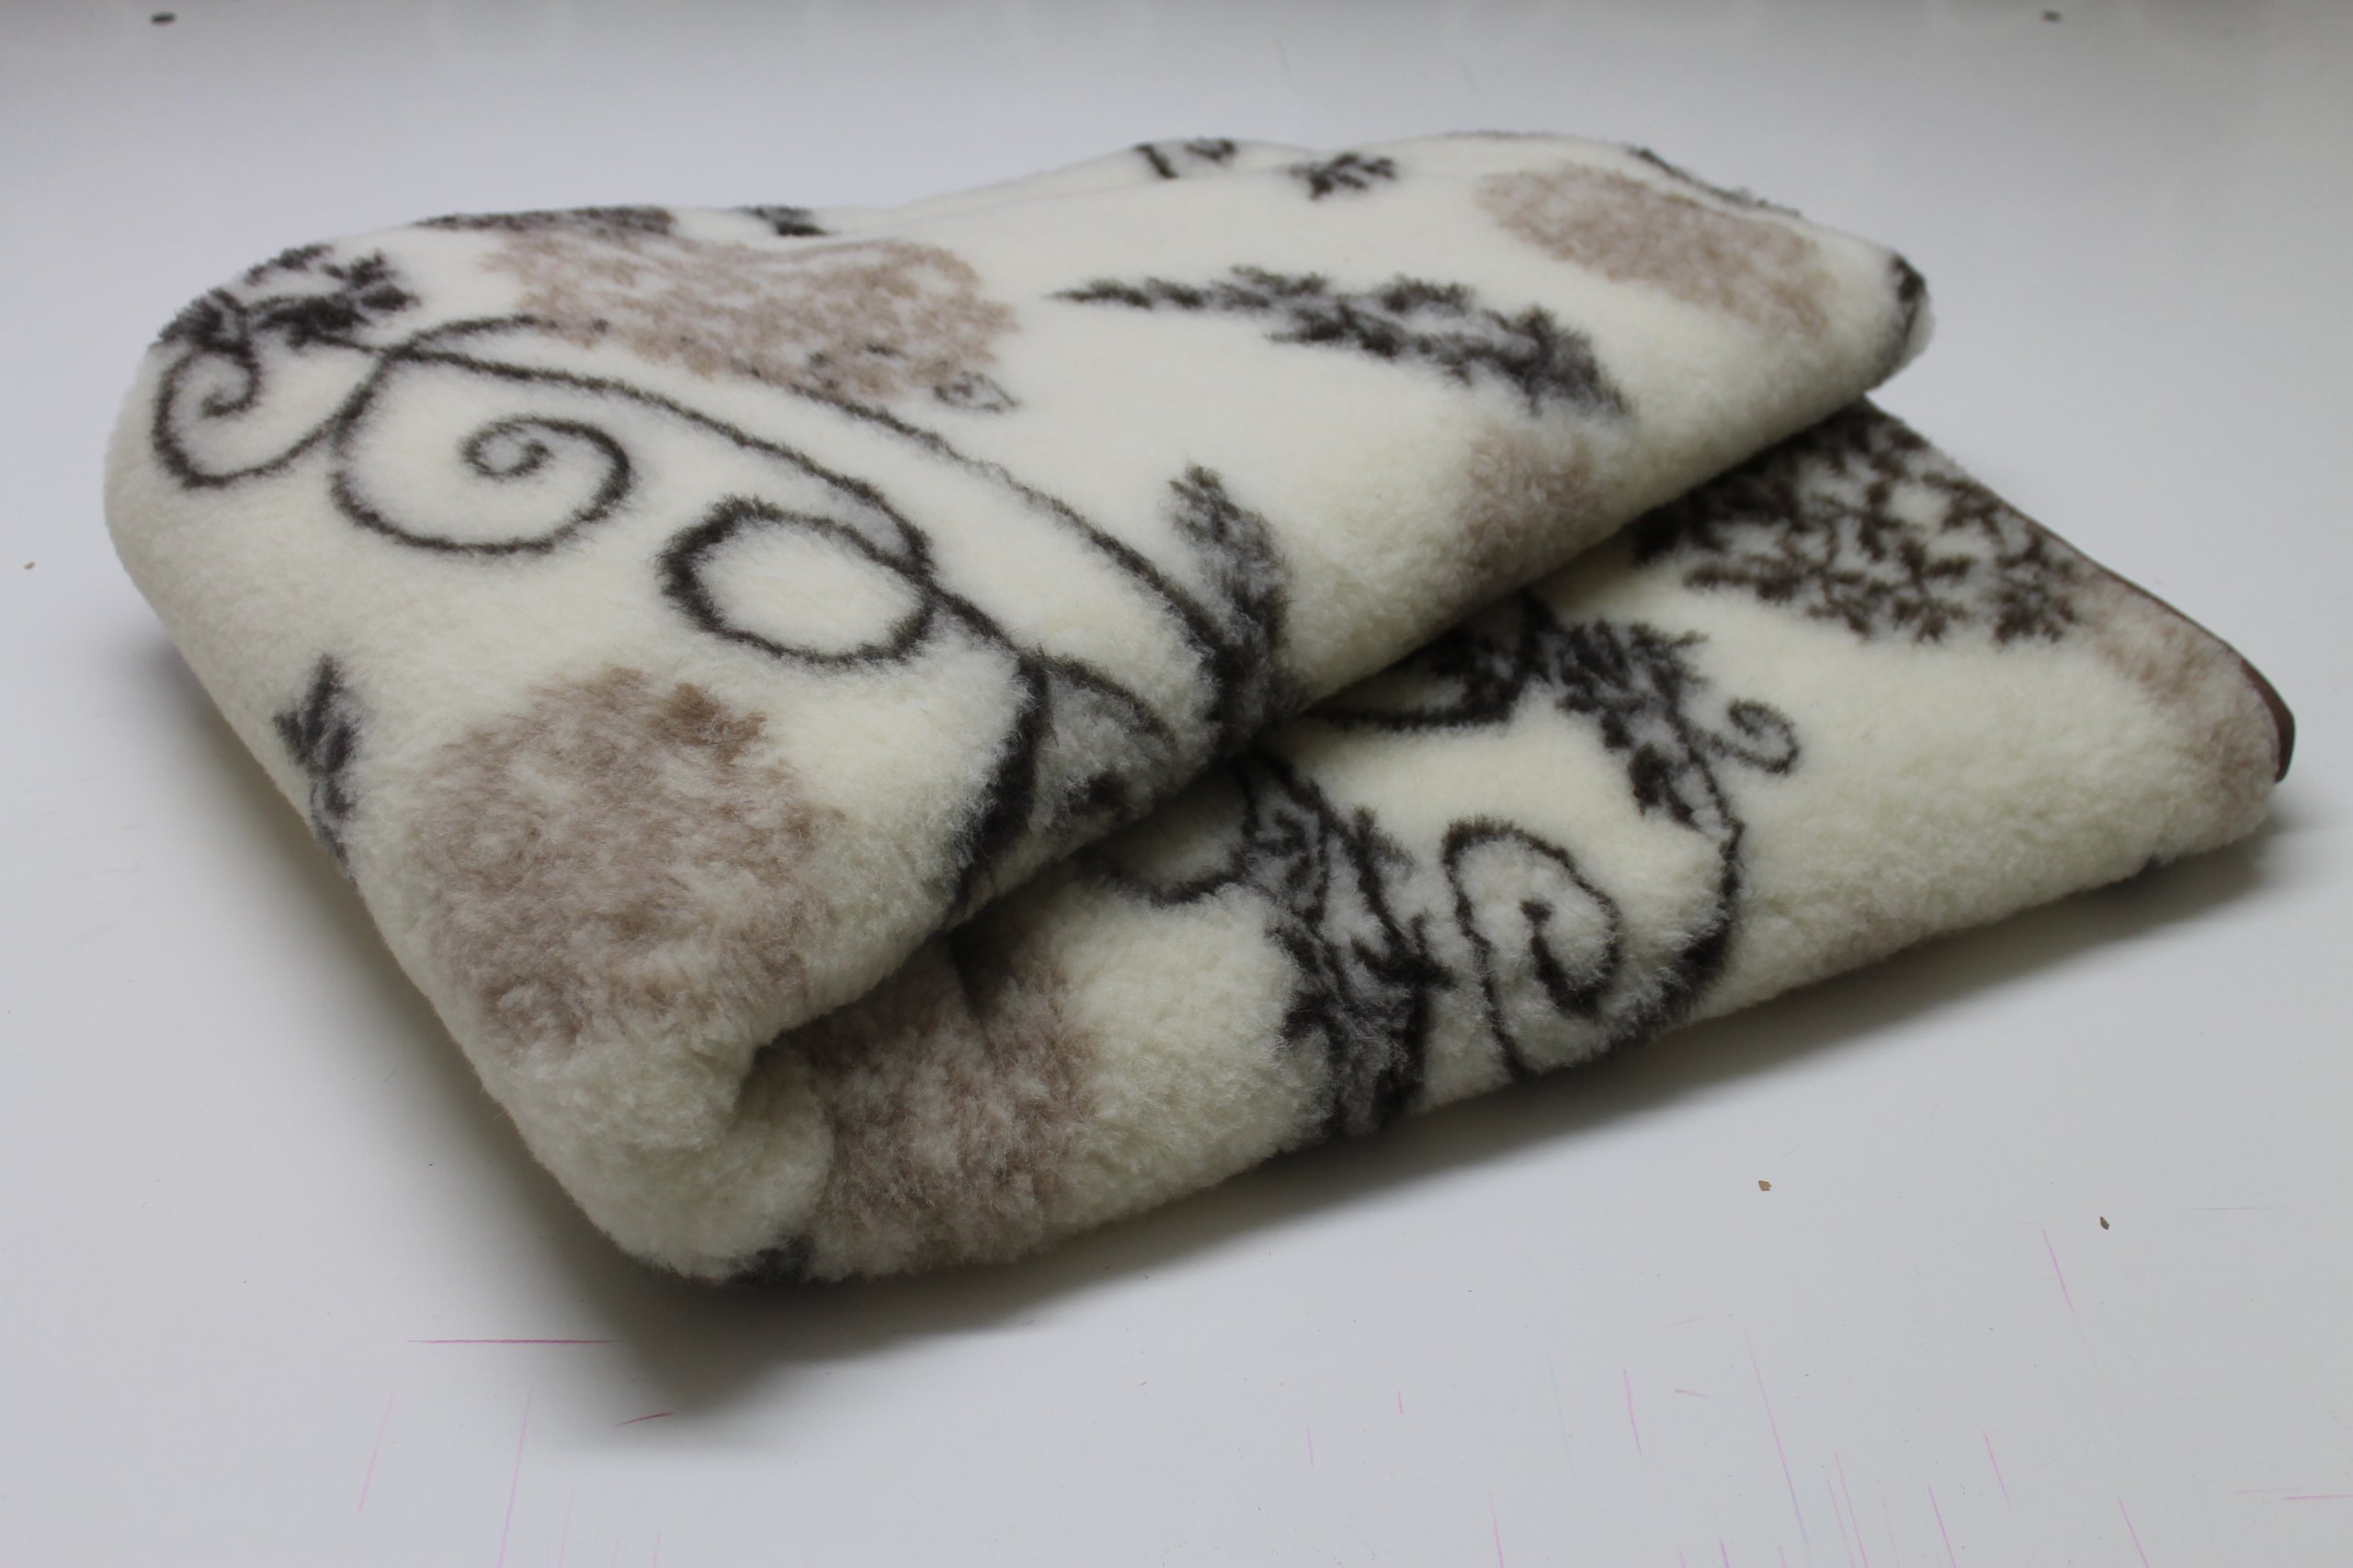 Как сшить одеяло своими руками: виды одеял, расчет ткани, подбор наполнителя